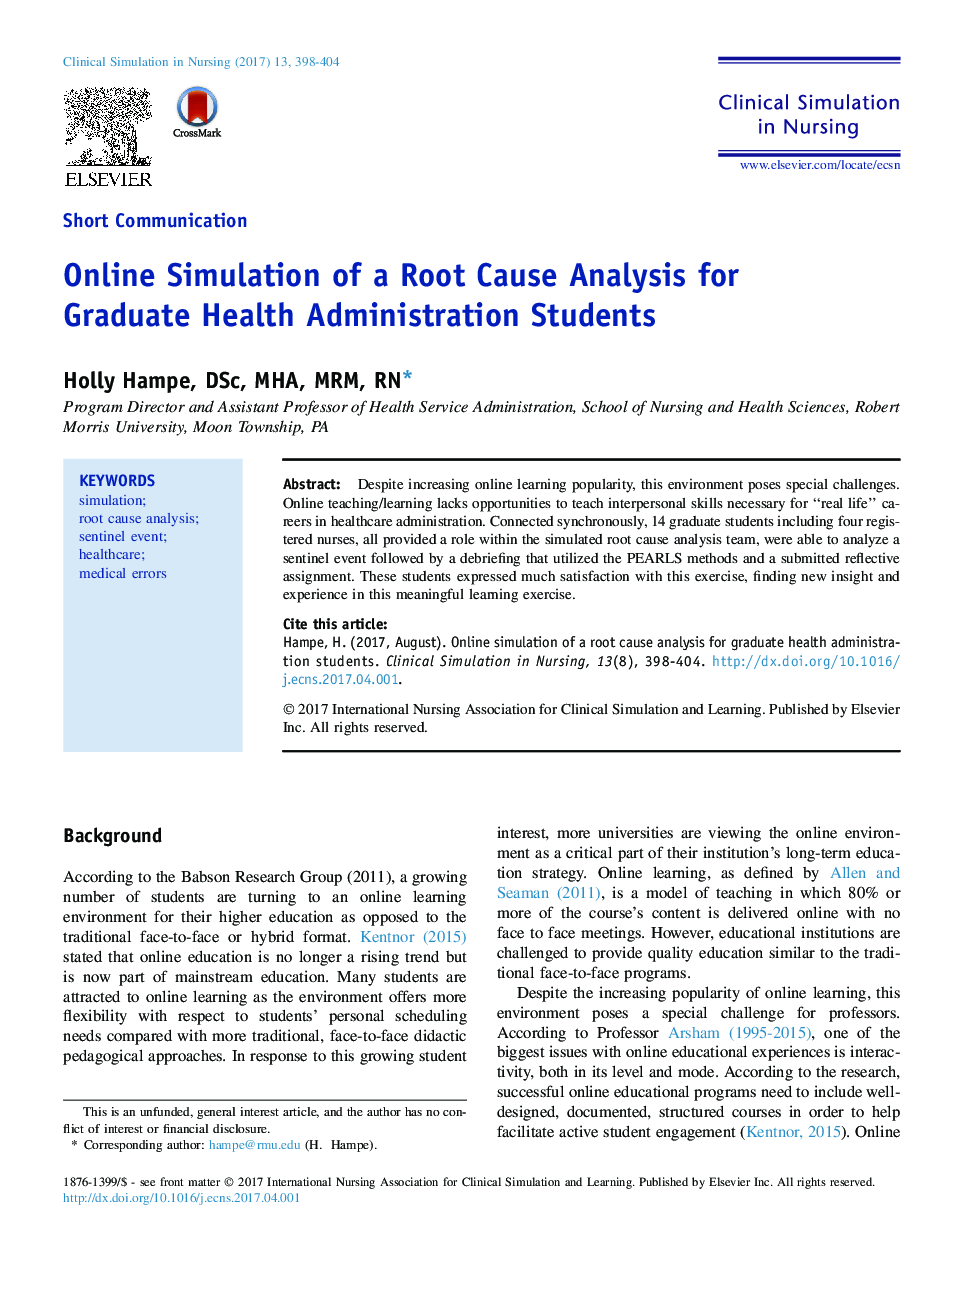 شبیهسازی آنلاین یک تجزیه و تحلیل علت ریشه برای دانشجویان کارشناسی ارشد بهداشت و درمان 